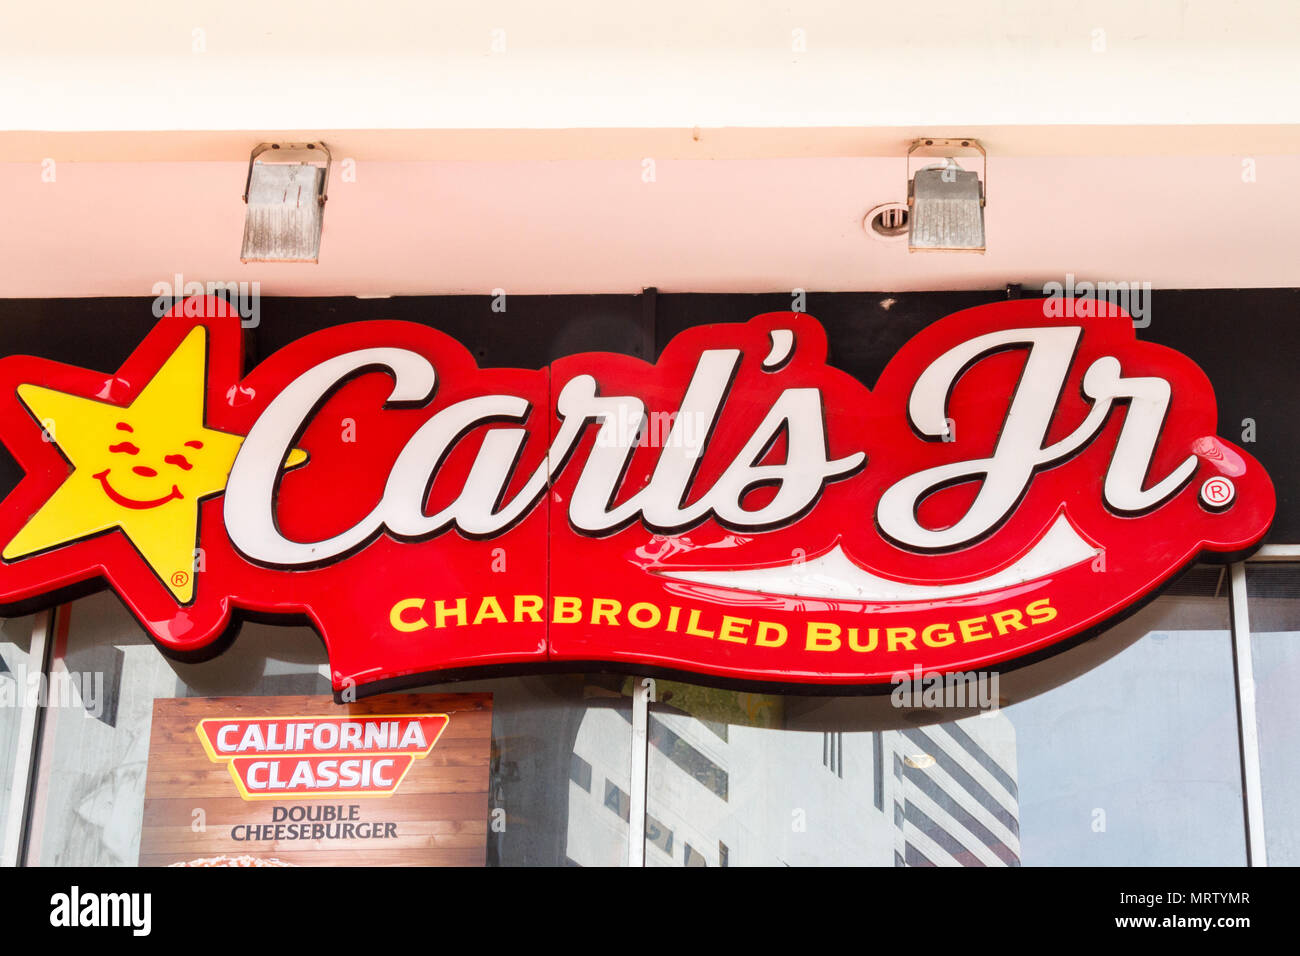 Bangkok, Thailand - 25. März 2017: Zeichen für Carls jr charbroiled Burger. Burger Gelenke haben sehr popuar in Thailand geworden. Stockfoto